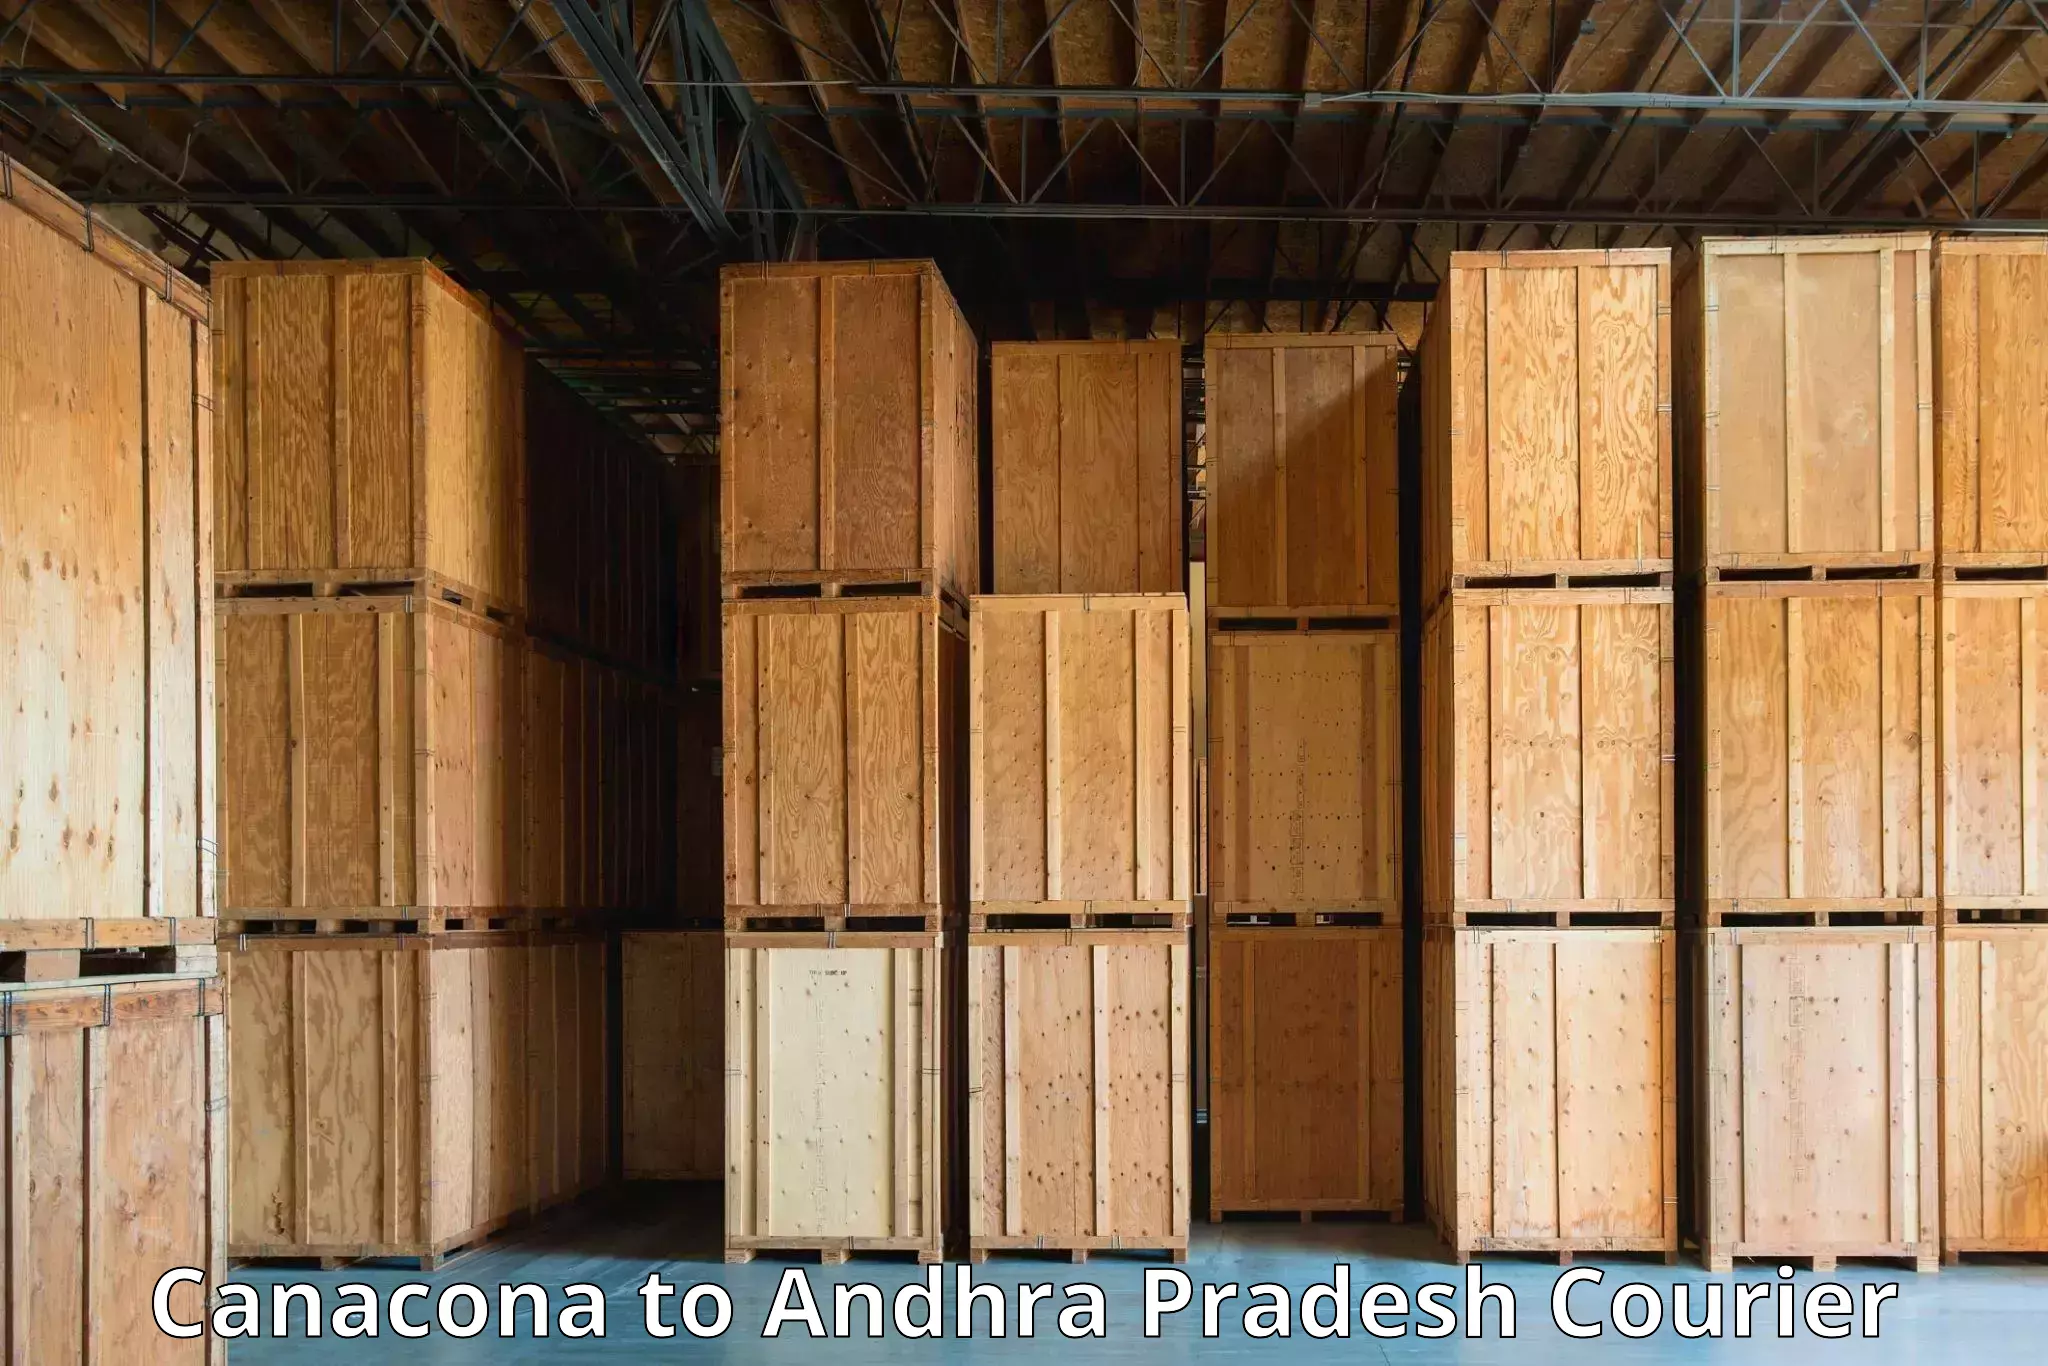 Customer-centric shipping Canacona to Amadalavalasa